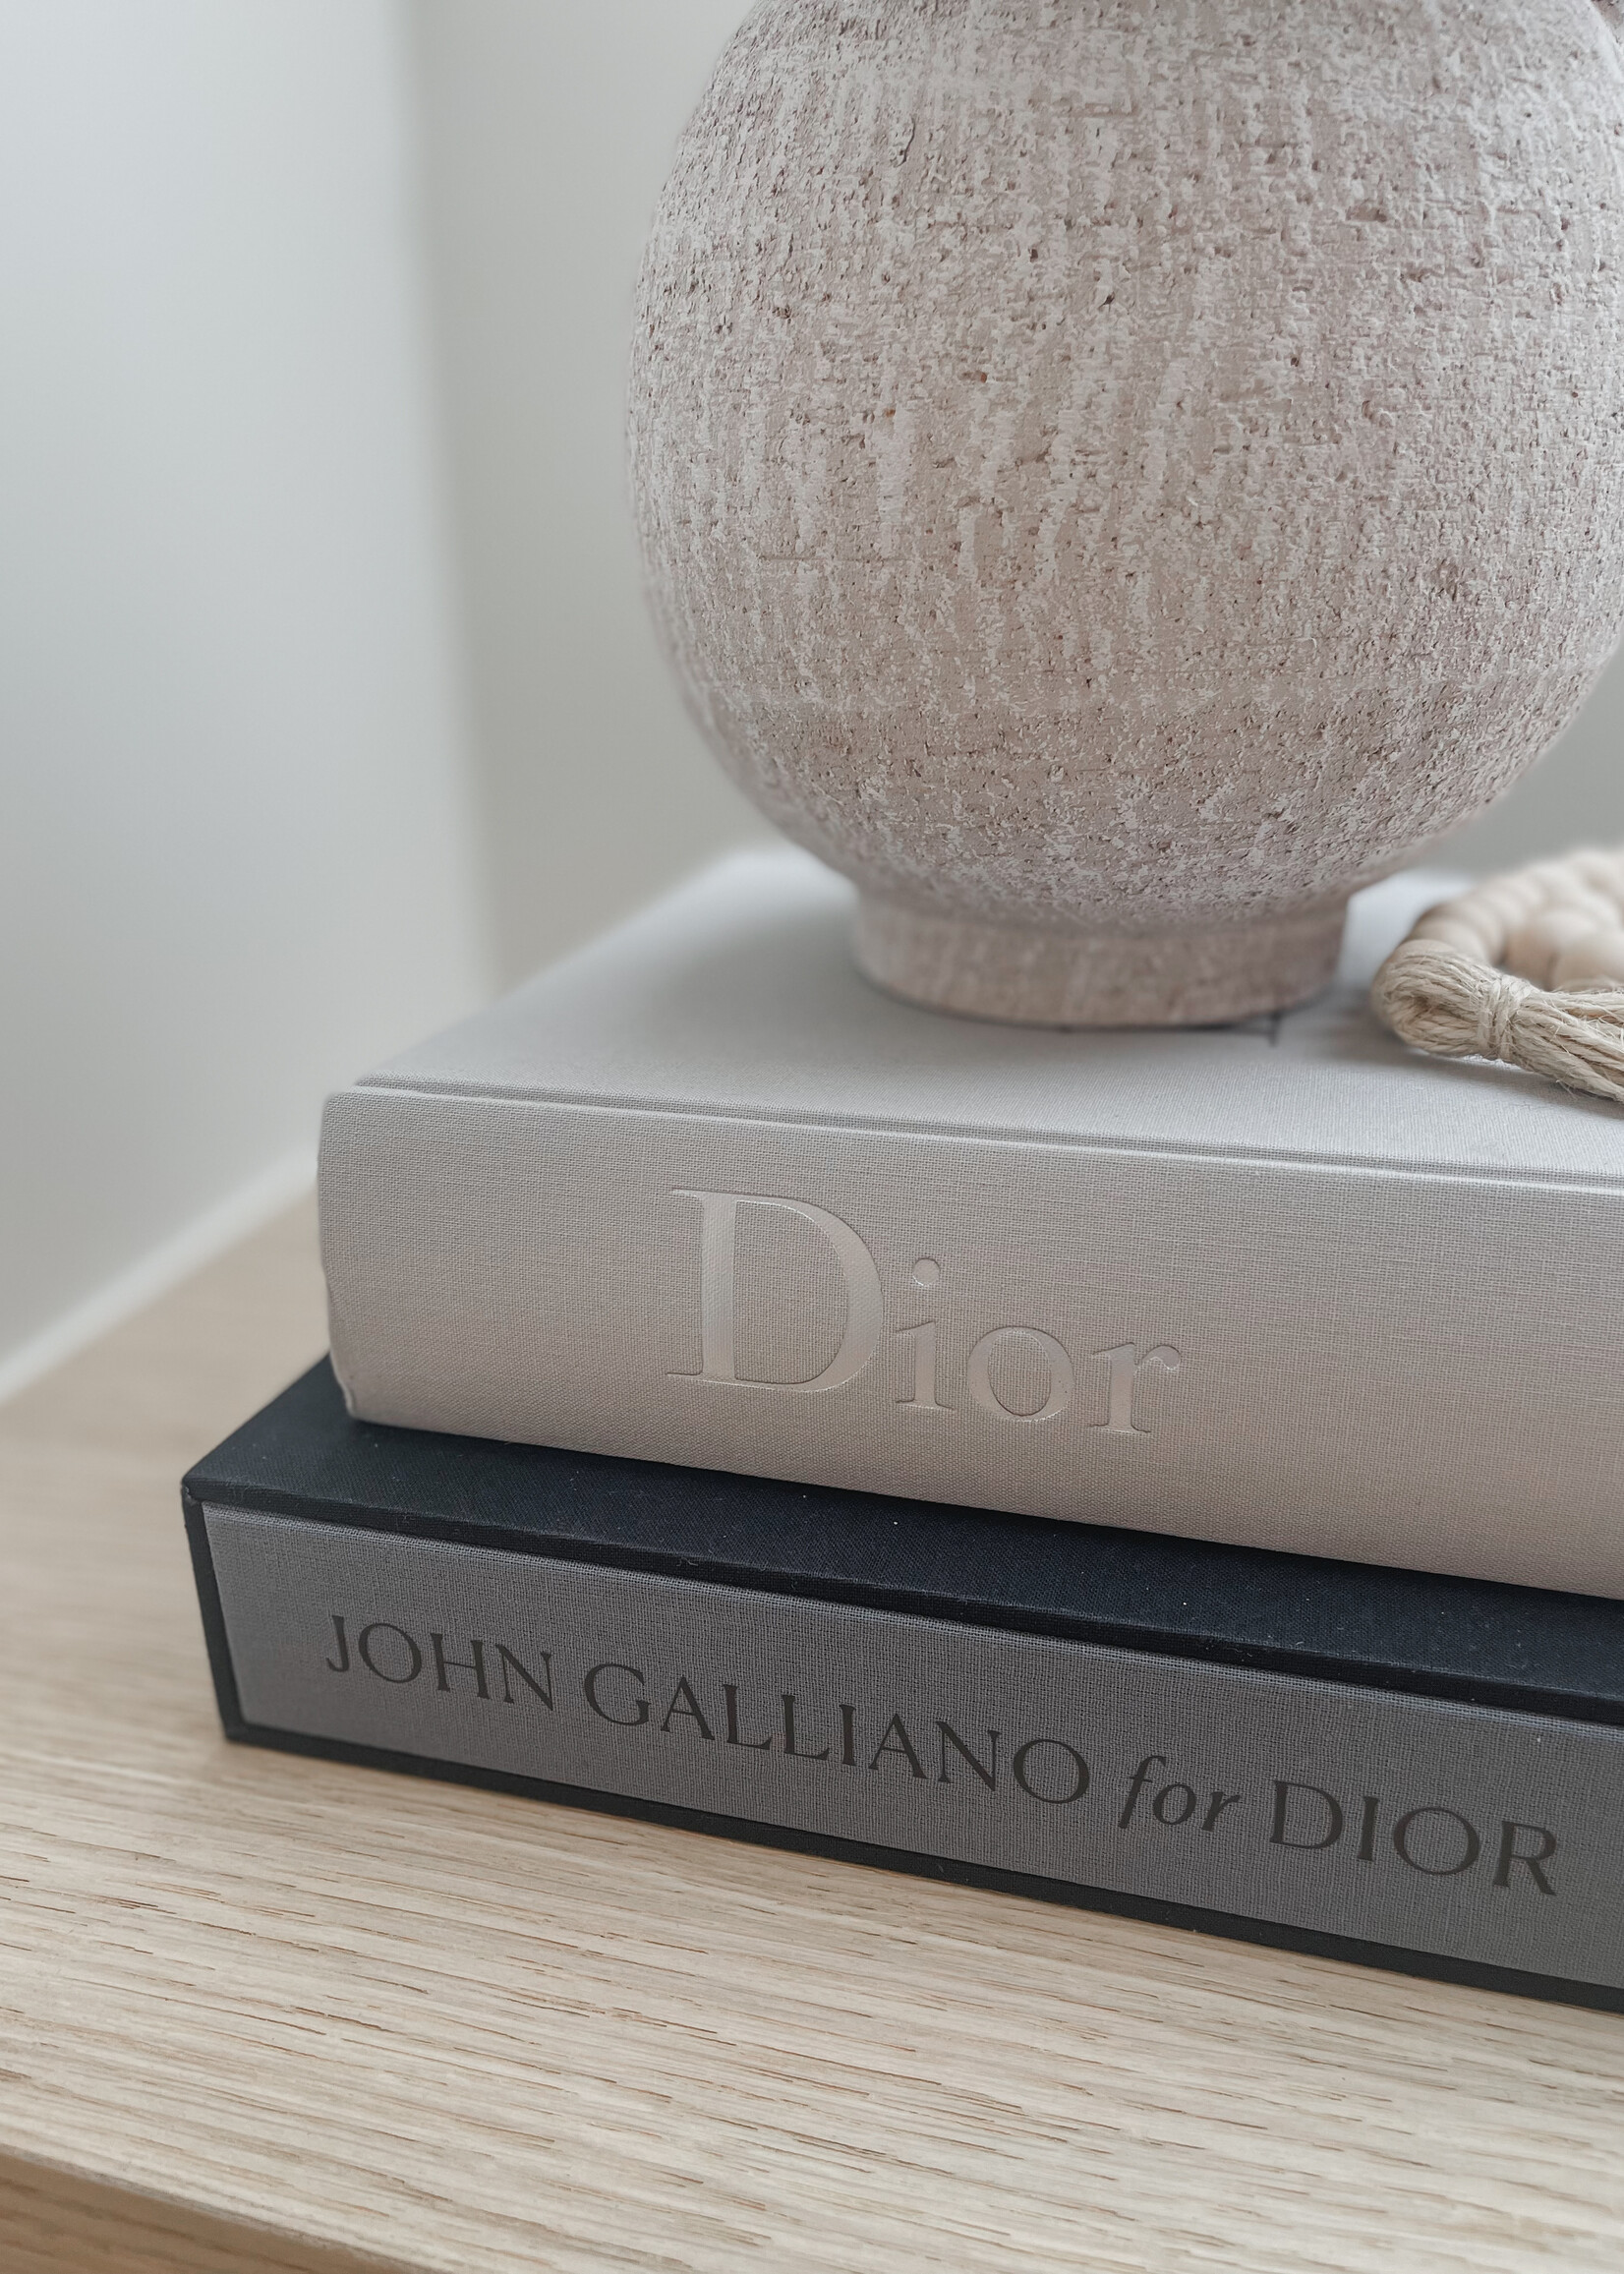 Koffietafelboek 'John galliano for dior'